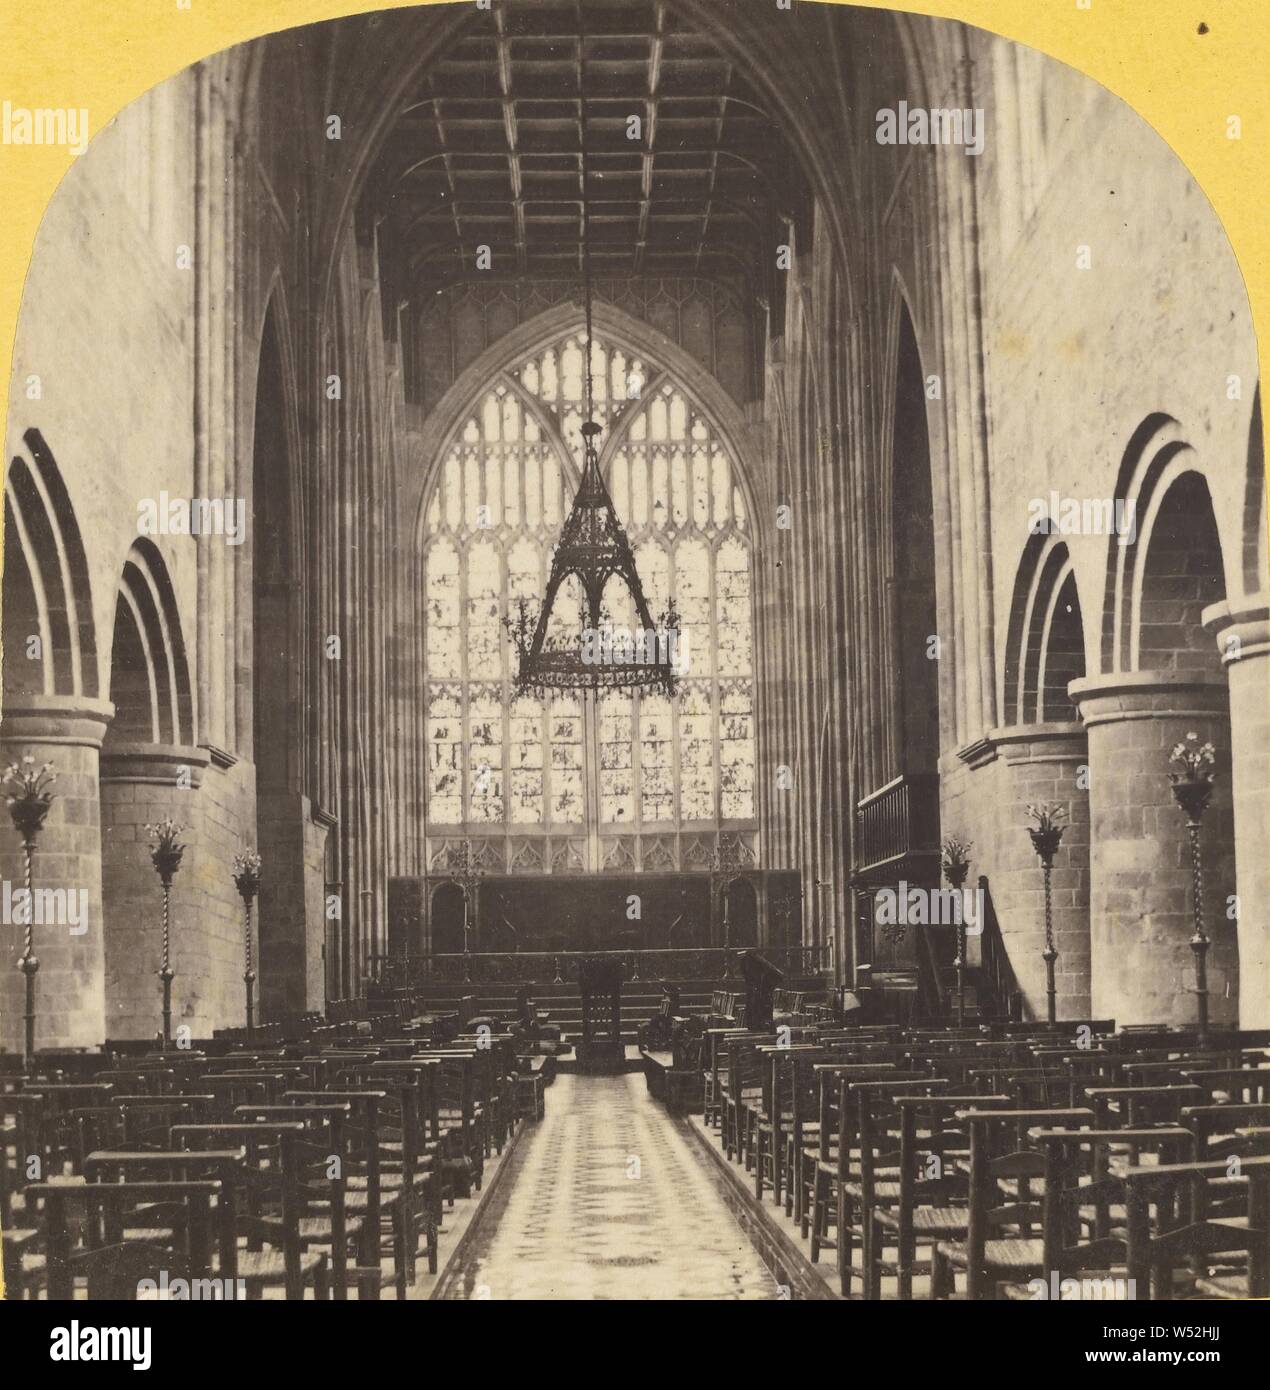 Innenraum der Klosterkirche, Malvern, Unbekannten, Britischen, über 1865, Eiweiß silber Drucken Stockfoto